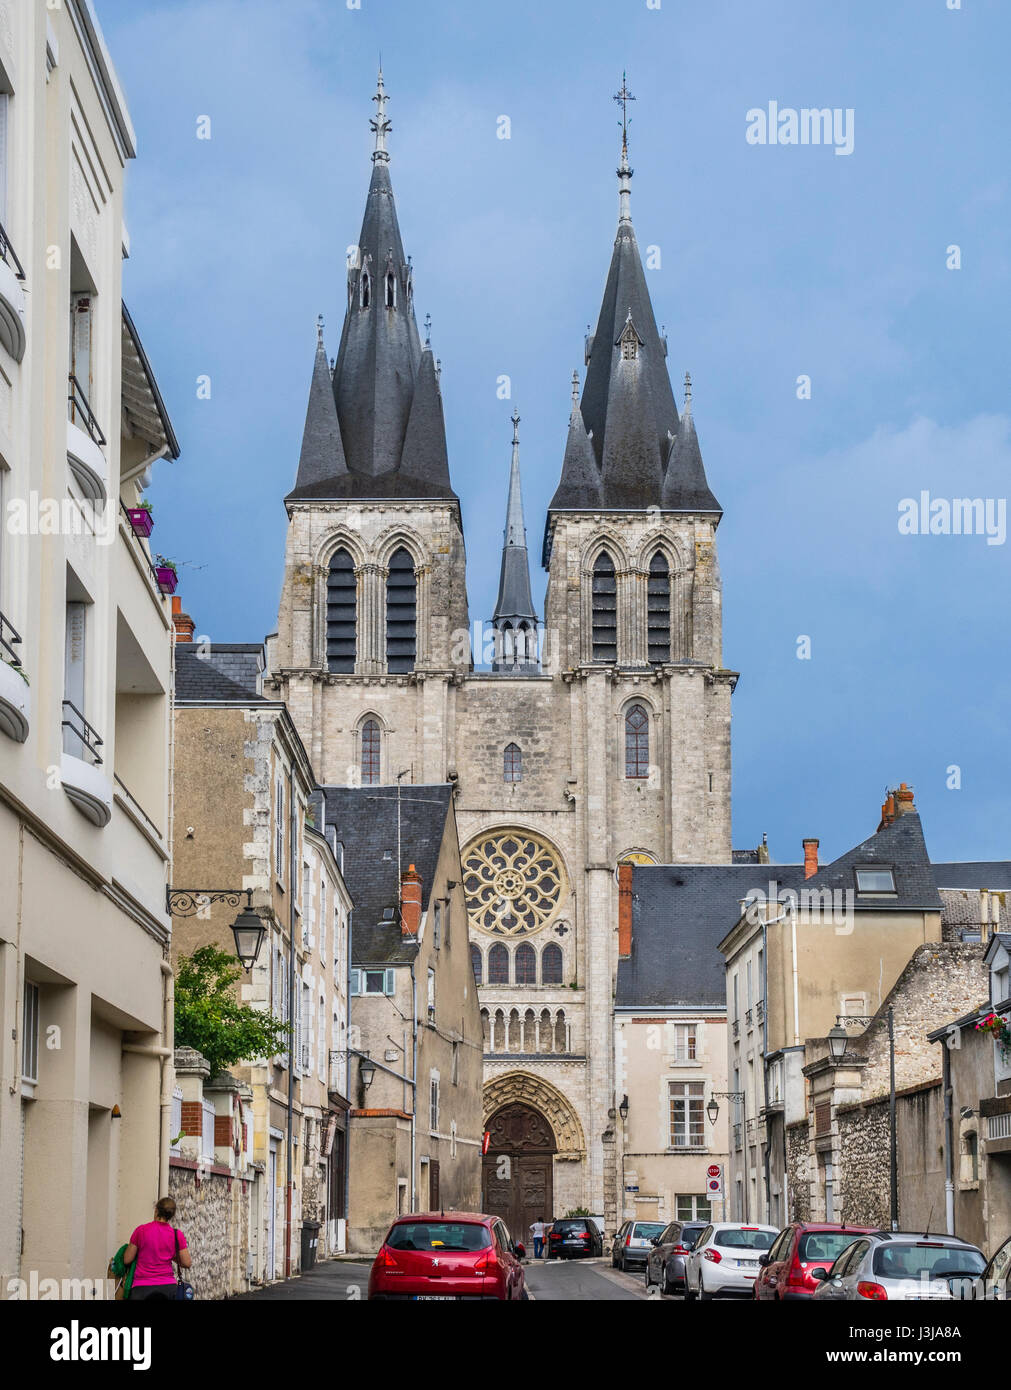 France, Centre-Val de Loire, Blois, view of St. Nicholas Church Stock Photo